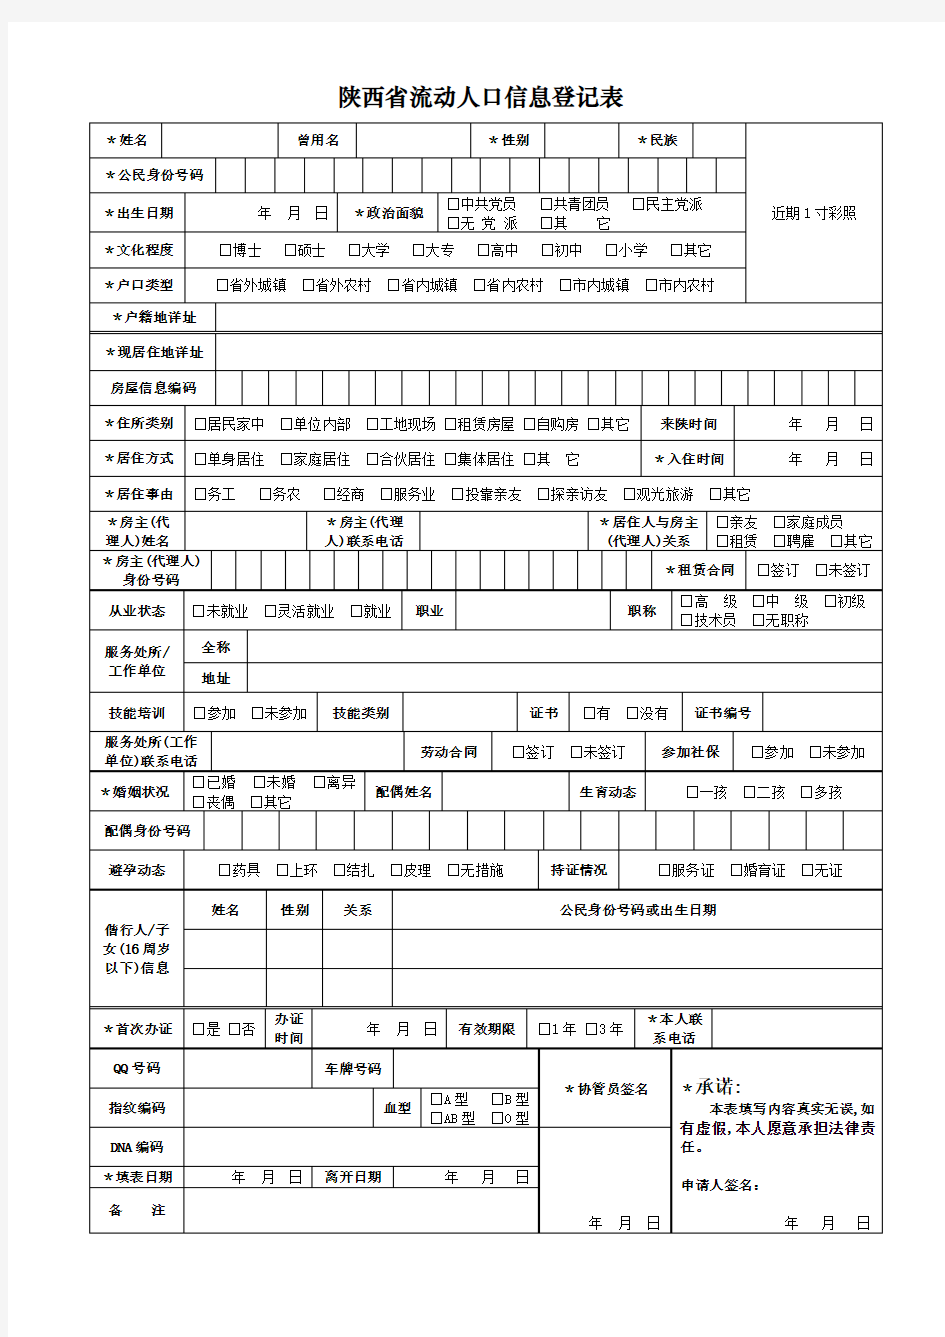 陕西省流动人口信息登记表